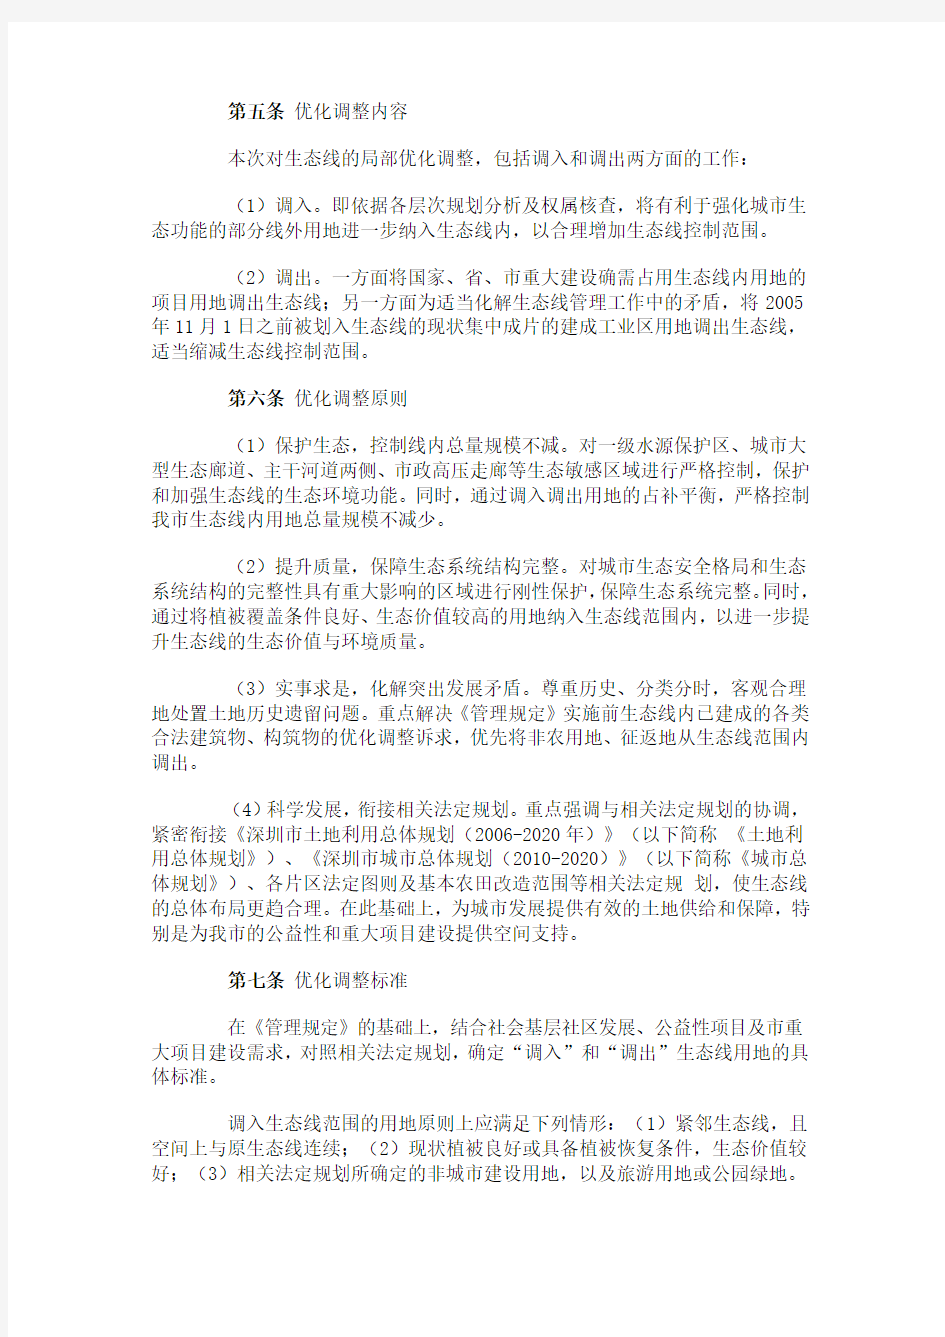 深圳市基本生态控制线优化调整方案(2013)